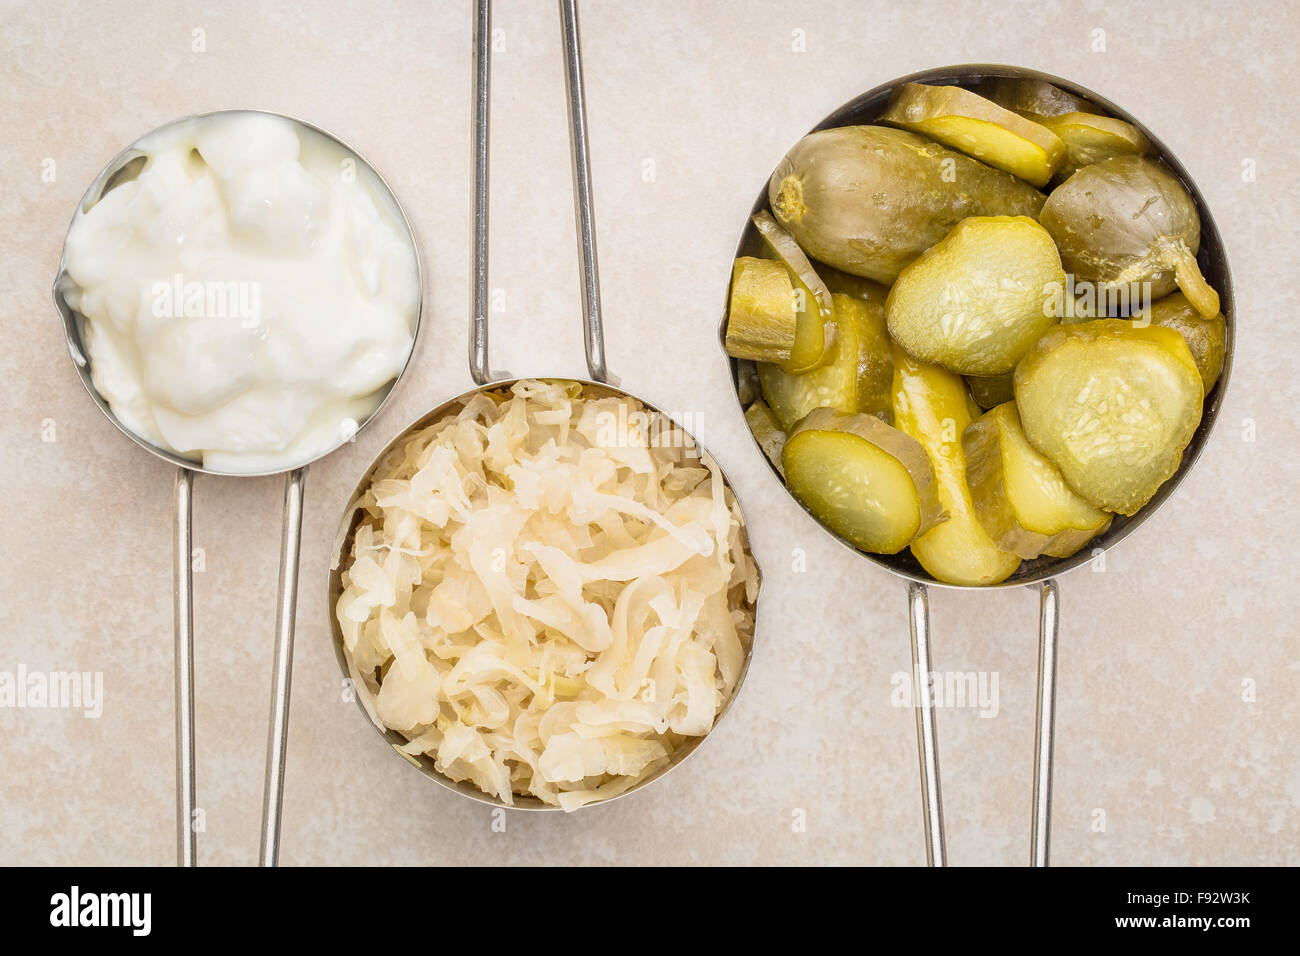 Sauerkraut, Gurken Essiggurken und Joghurt - fermentiert beliebte probiotische Lebensmittel - drei Messbecher gegen keramische Fliesen Stockfoto